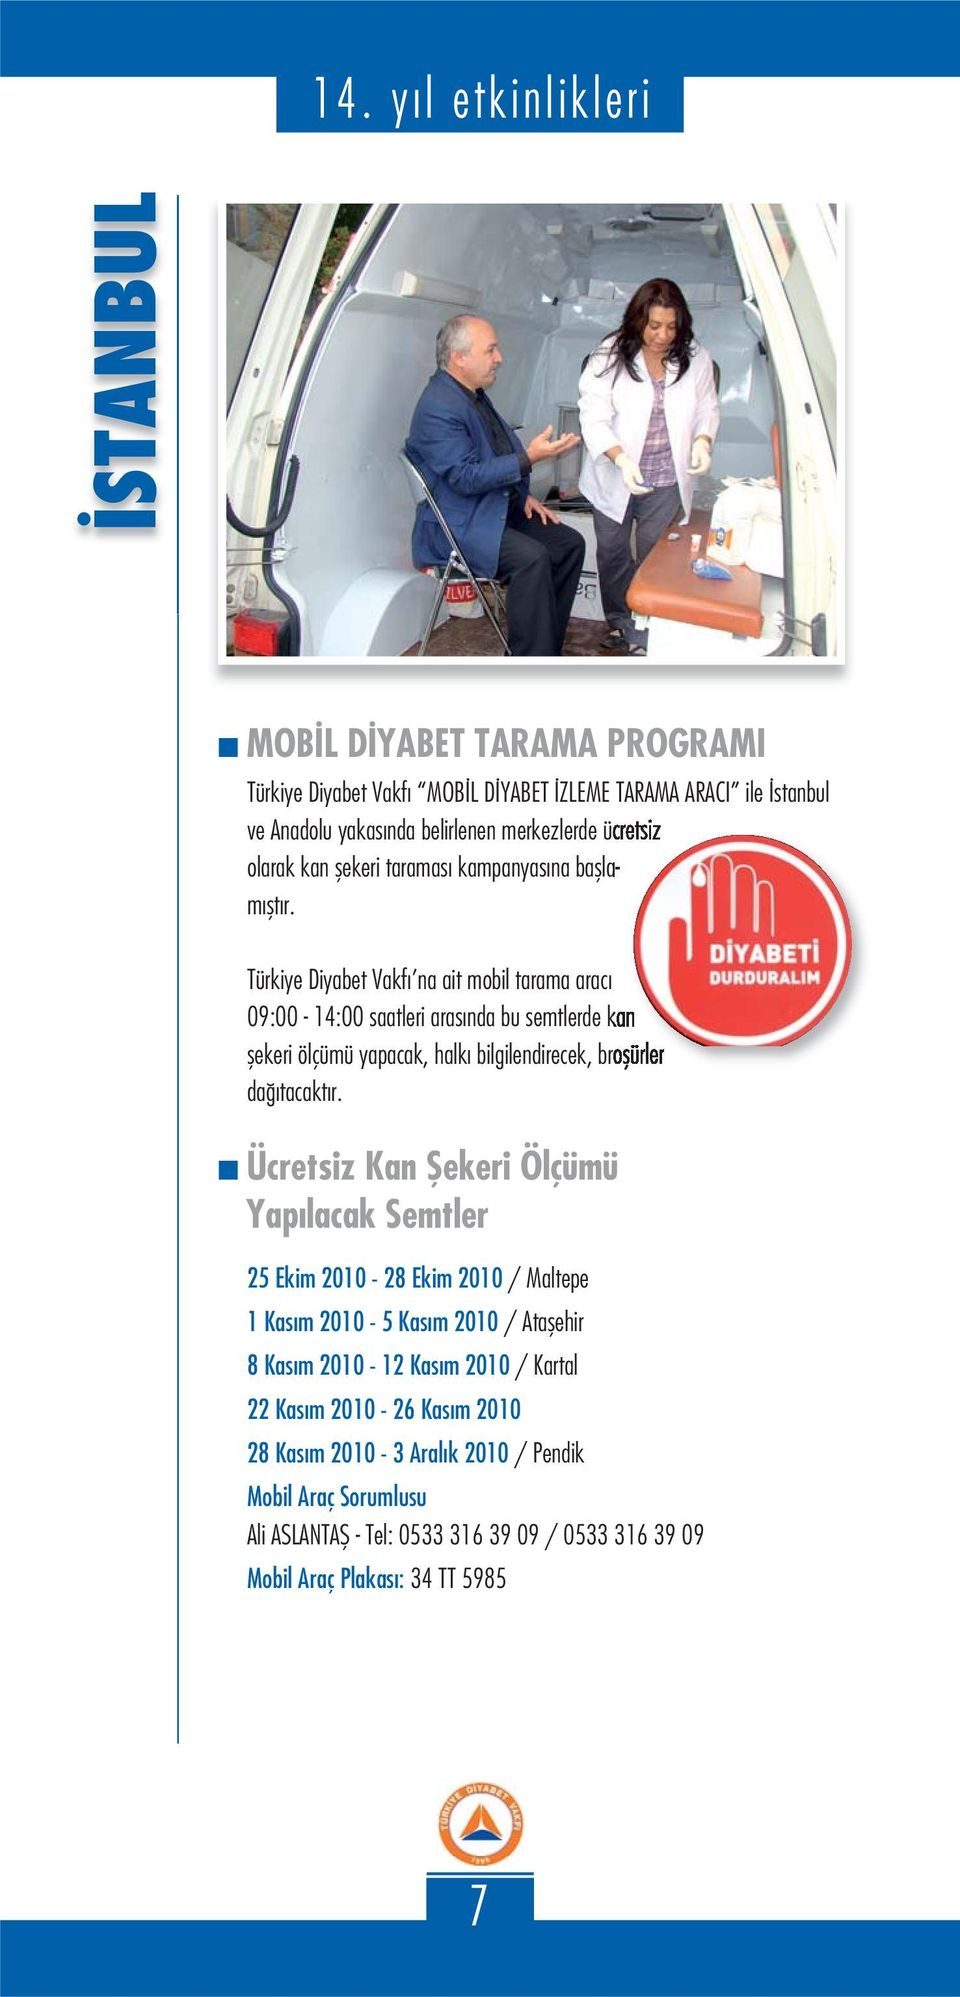 Türkiye Diyabet Vakfı na ait mobil tarama aracı 09:00-14:00 saatleri arasında bu semtlerde kan şekeri ölçümü yapacak, halkı bilgilendirecek, broşürler dağıtacaktır.